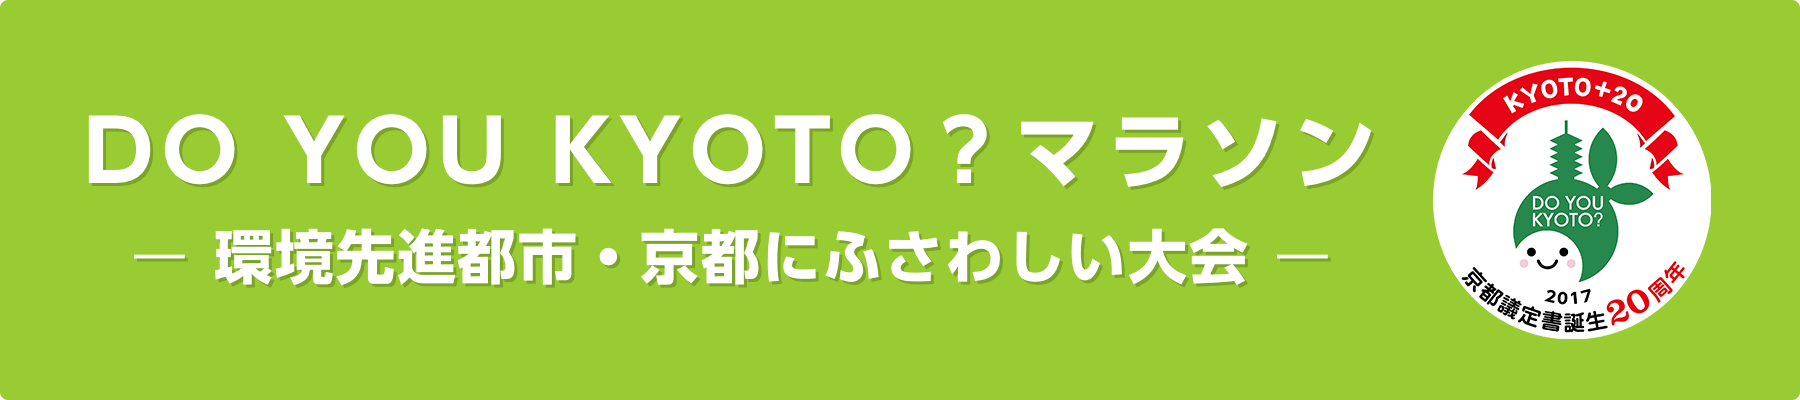 「DO YOU KYOTO？」- 環境先進都市・京都にふさわしい大会 -